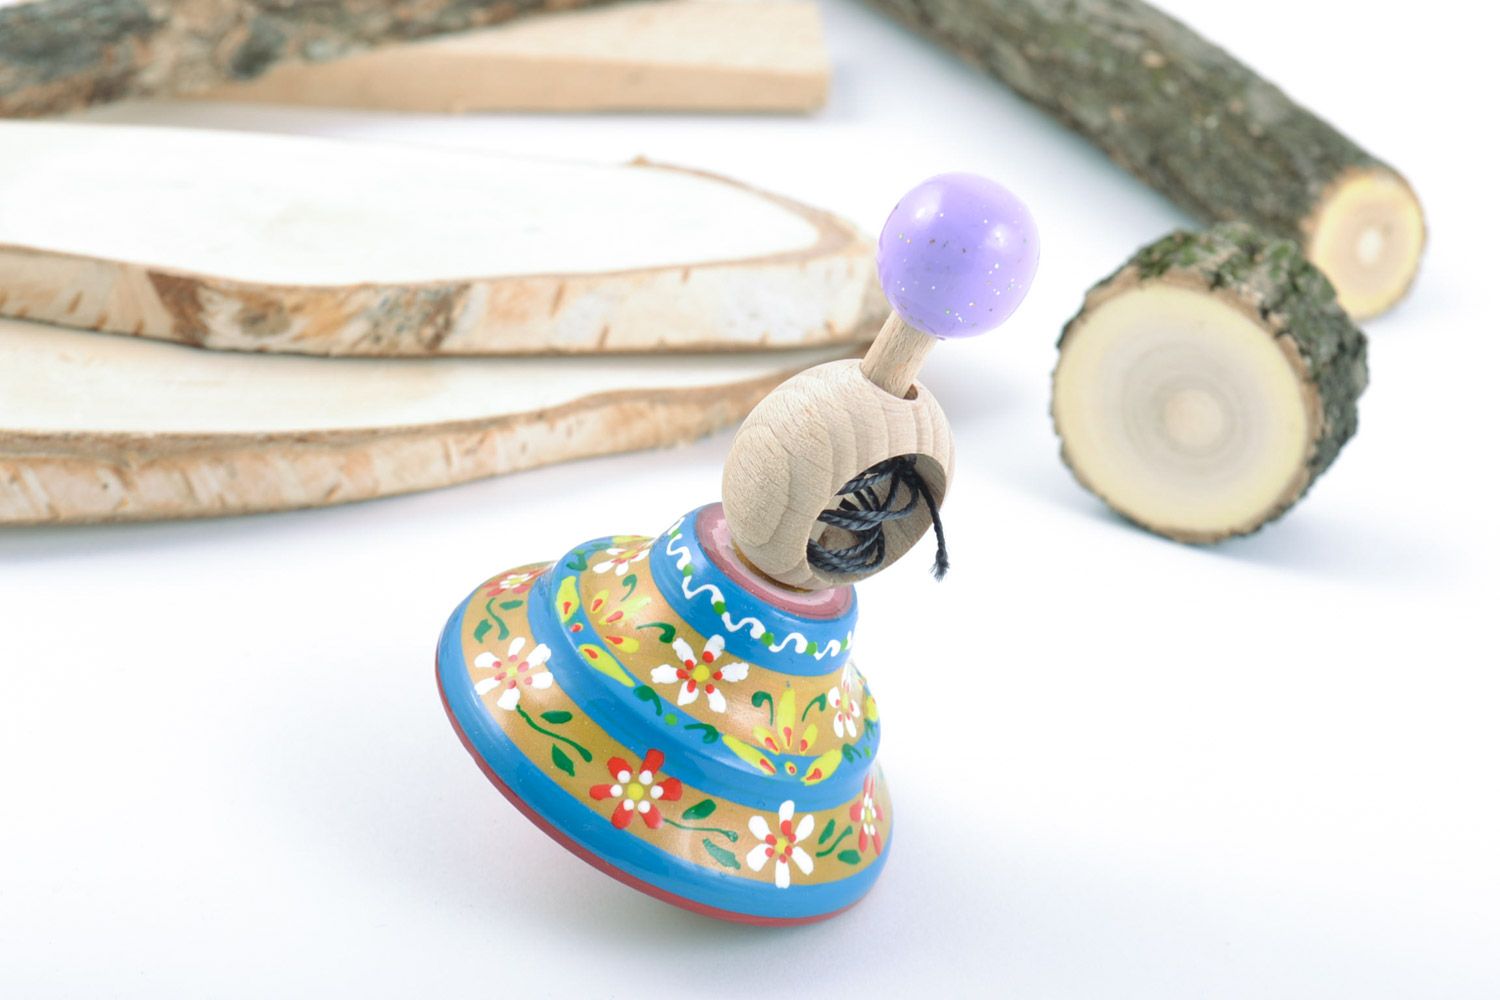 Деревянный волчок ручной работы игрушка для детей расписанный эко-красками  фото 2